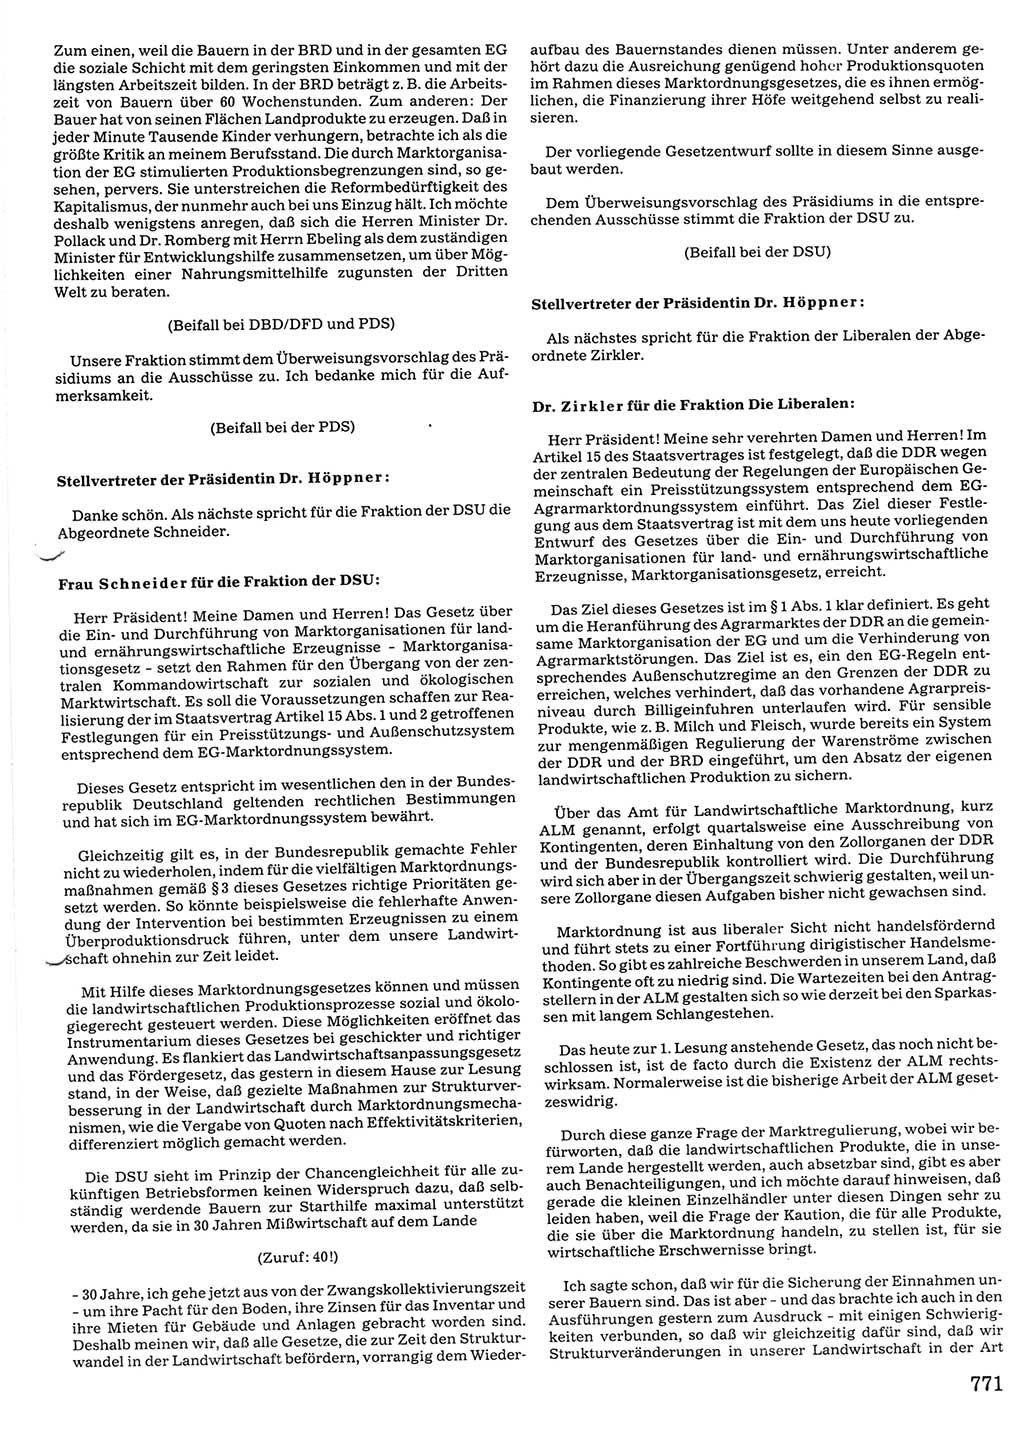 Tagungen der Volkskammer (VK) der Deutschen Demokratischen Republik (DDR), 10. Wahlperiode 1990, Seite 771 (VK. DDR 10. WP. 1990, Prot. Tg. 1-38, 5.4.-2.10.1990, S. 771)